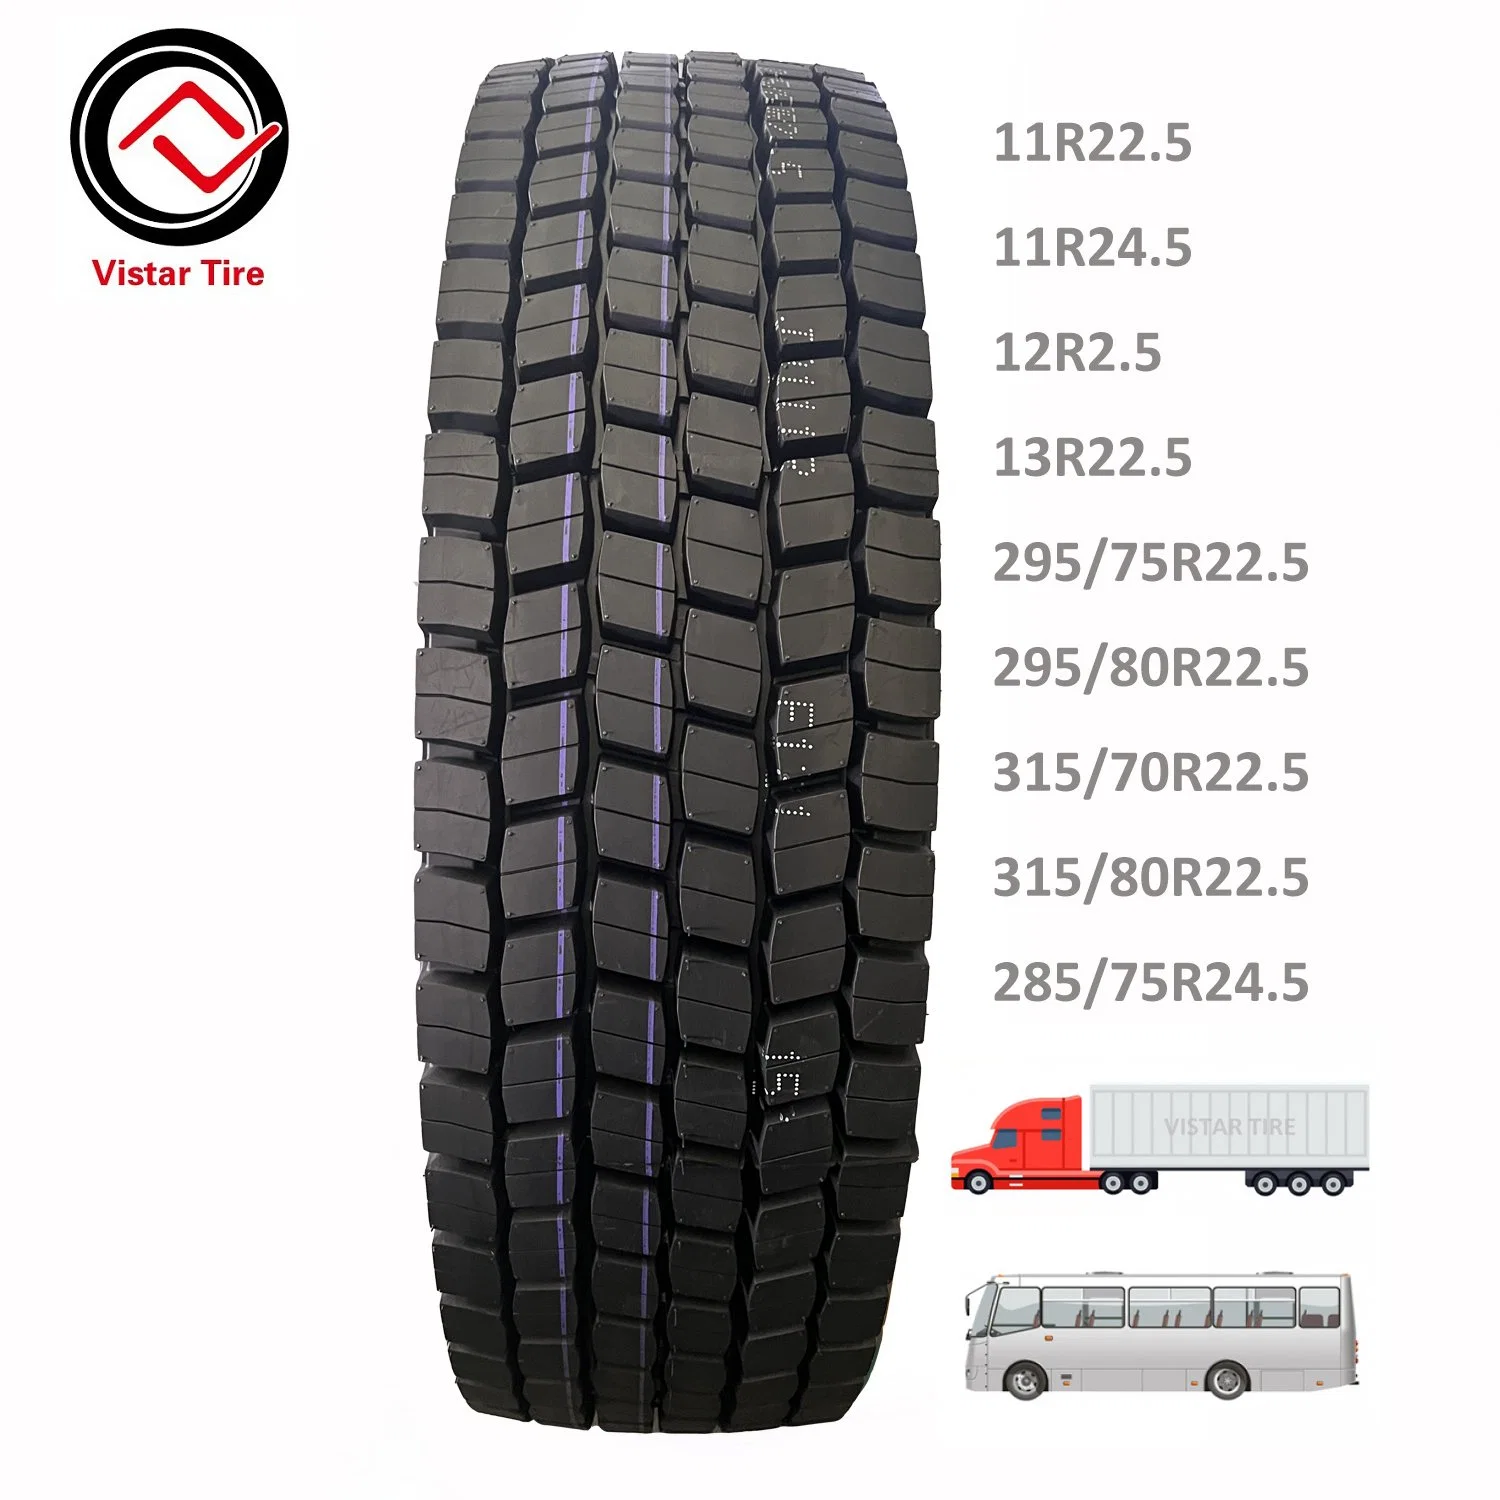 Linglong/Leao Brand Tyre/Pneus/Llantas 13r22.5 1200r20 750r16 315/80r22.5 385/65r22.5 11r22.5 295/80r22.5 275/70r22.5 255/70r22.5 Radial TBR Truck and Bus Tires